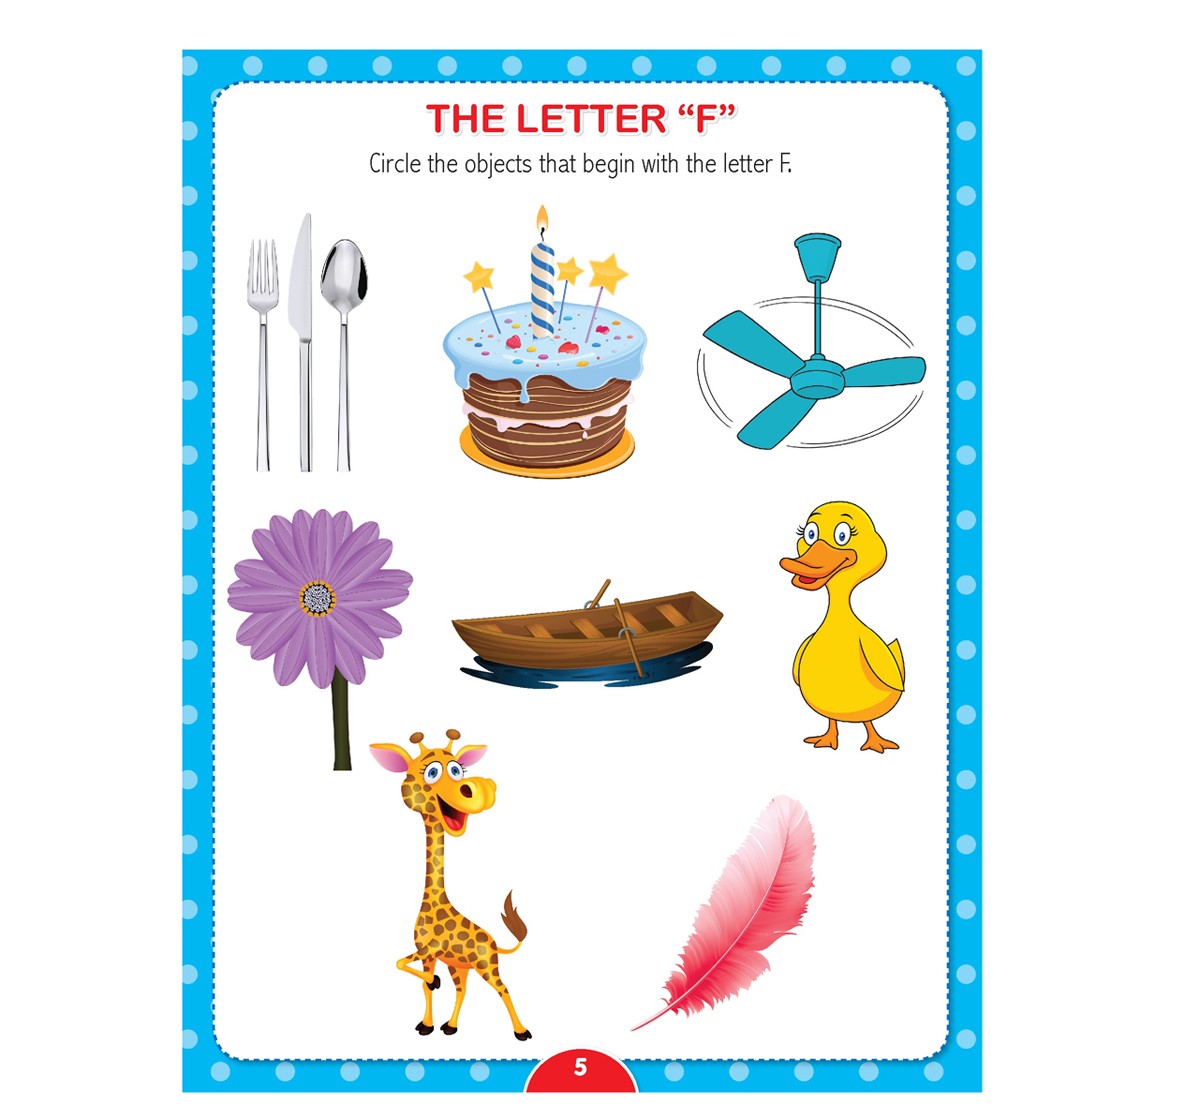 Dreamland Paperback Kinder Garden Worksheets Pack Books for Kids 4Y+, Multicolour